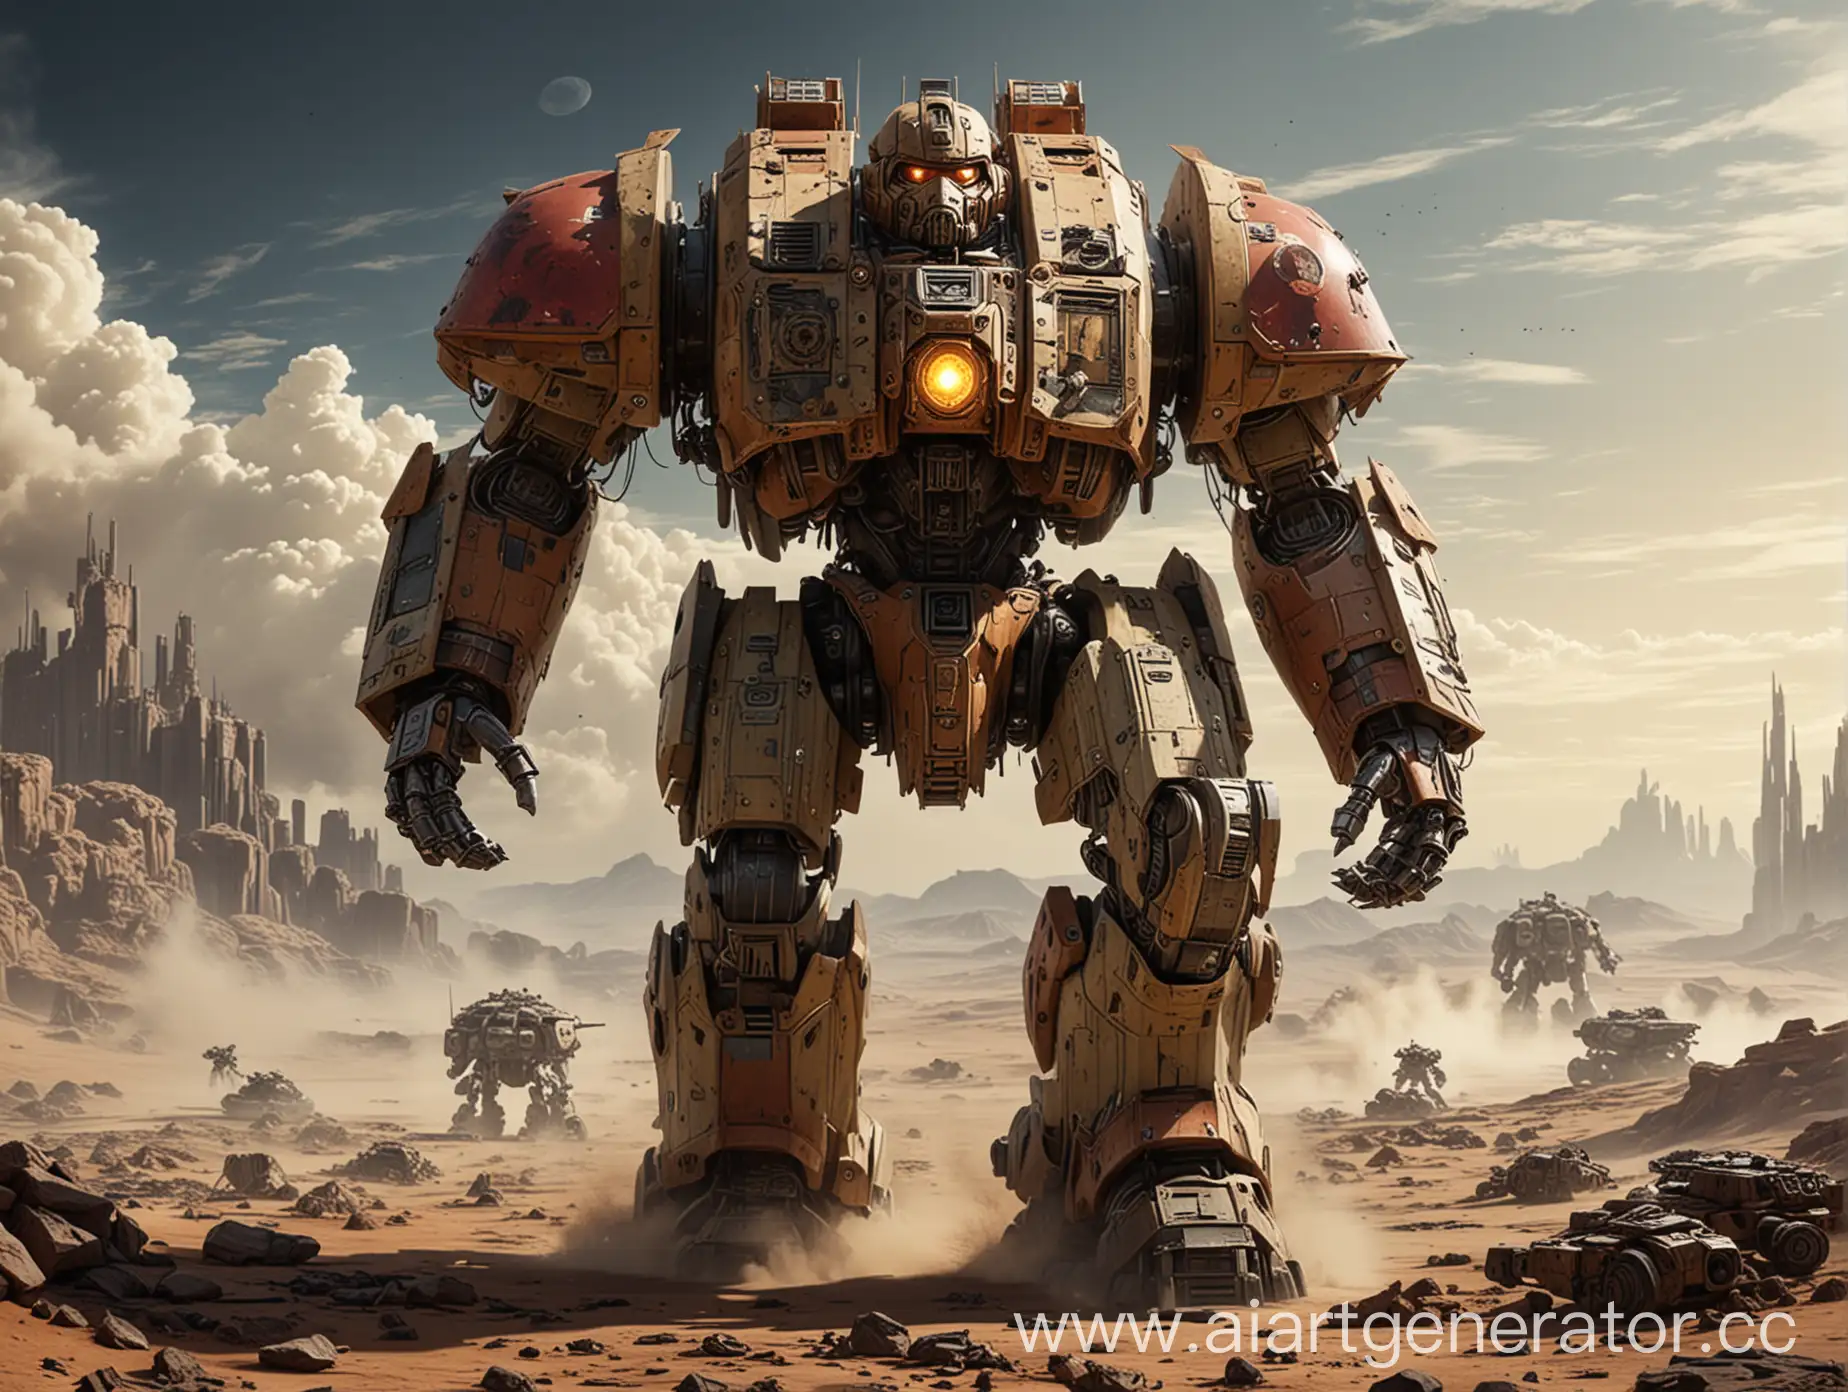 Огромный Робот Имперский Титан (Warhammer 40000) Идет по поверхности планеты во время войны.
Погода солнечная , ясная. Поверхность планеты безжизненная